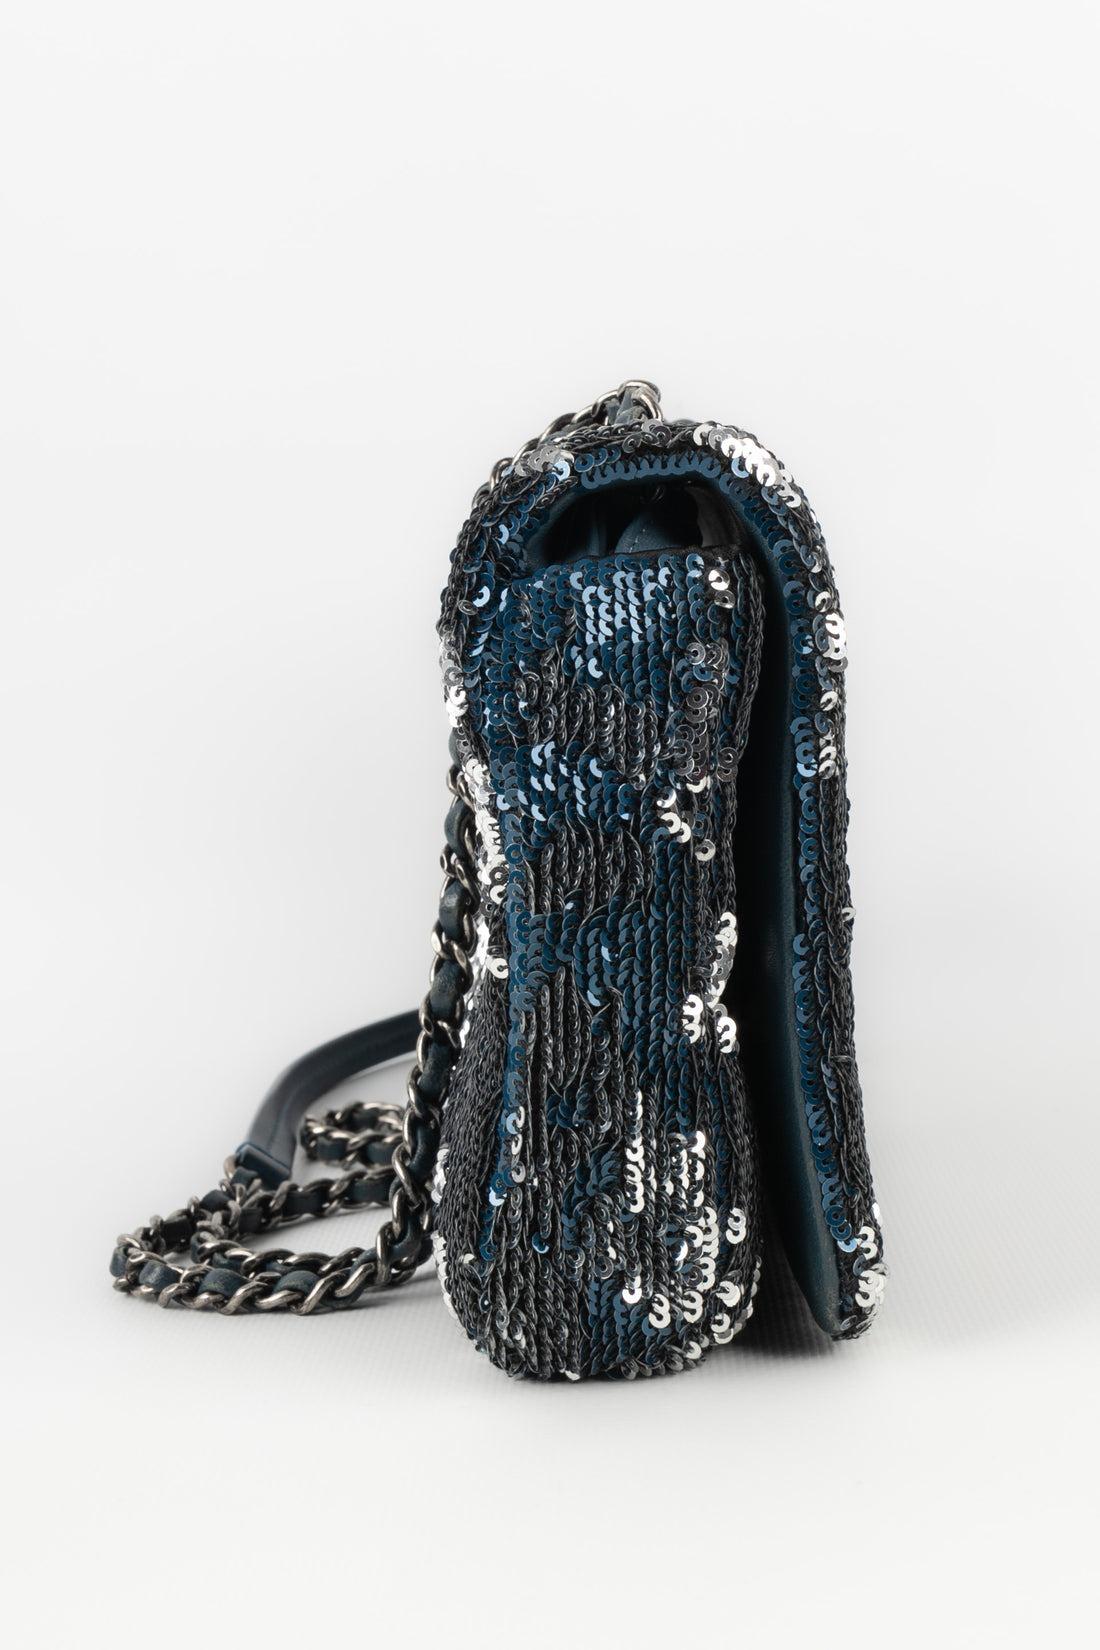 Women's Chanel Blue Leather Sequinned Bag Paris-Cuba, 2018 For Sale